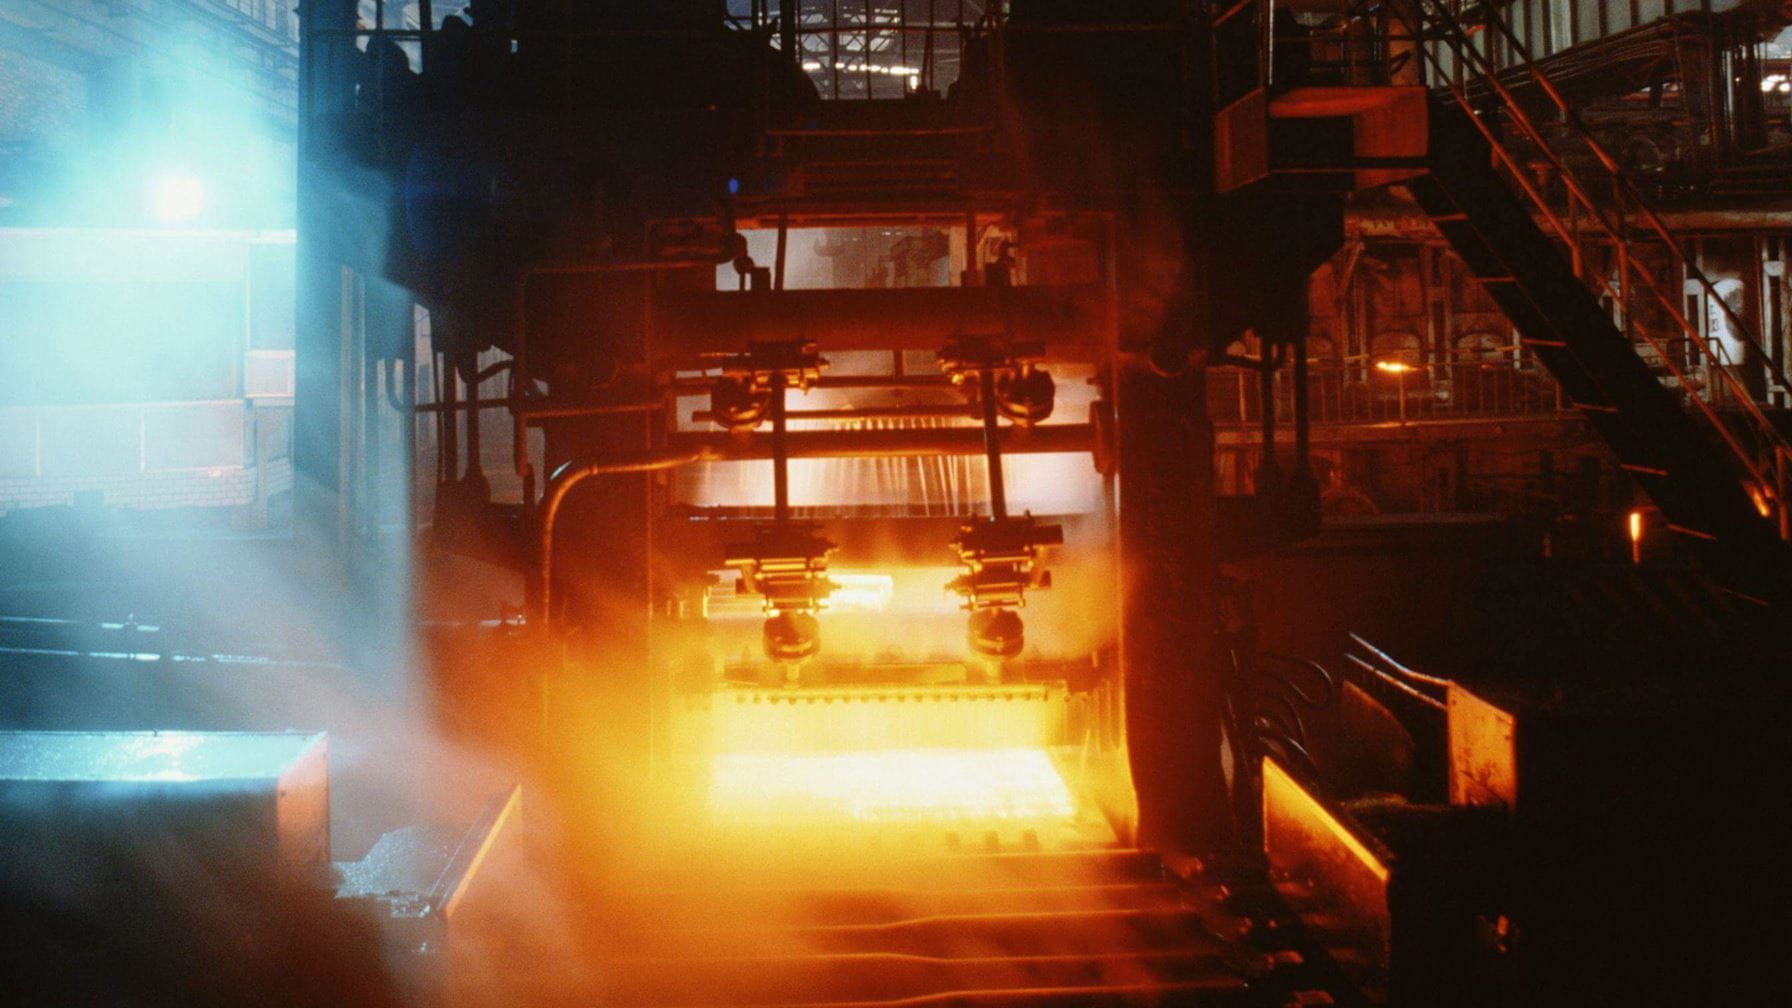 Stroom en koeling om staalfabriek op gang te houden